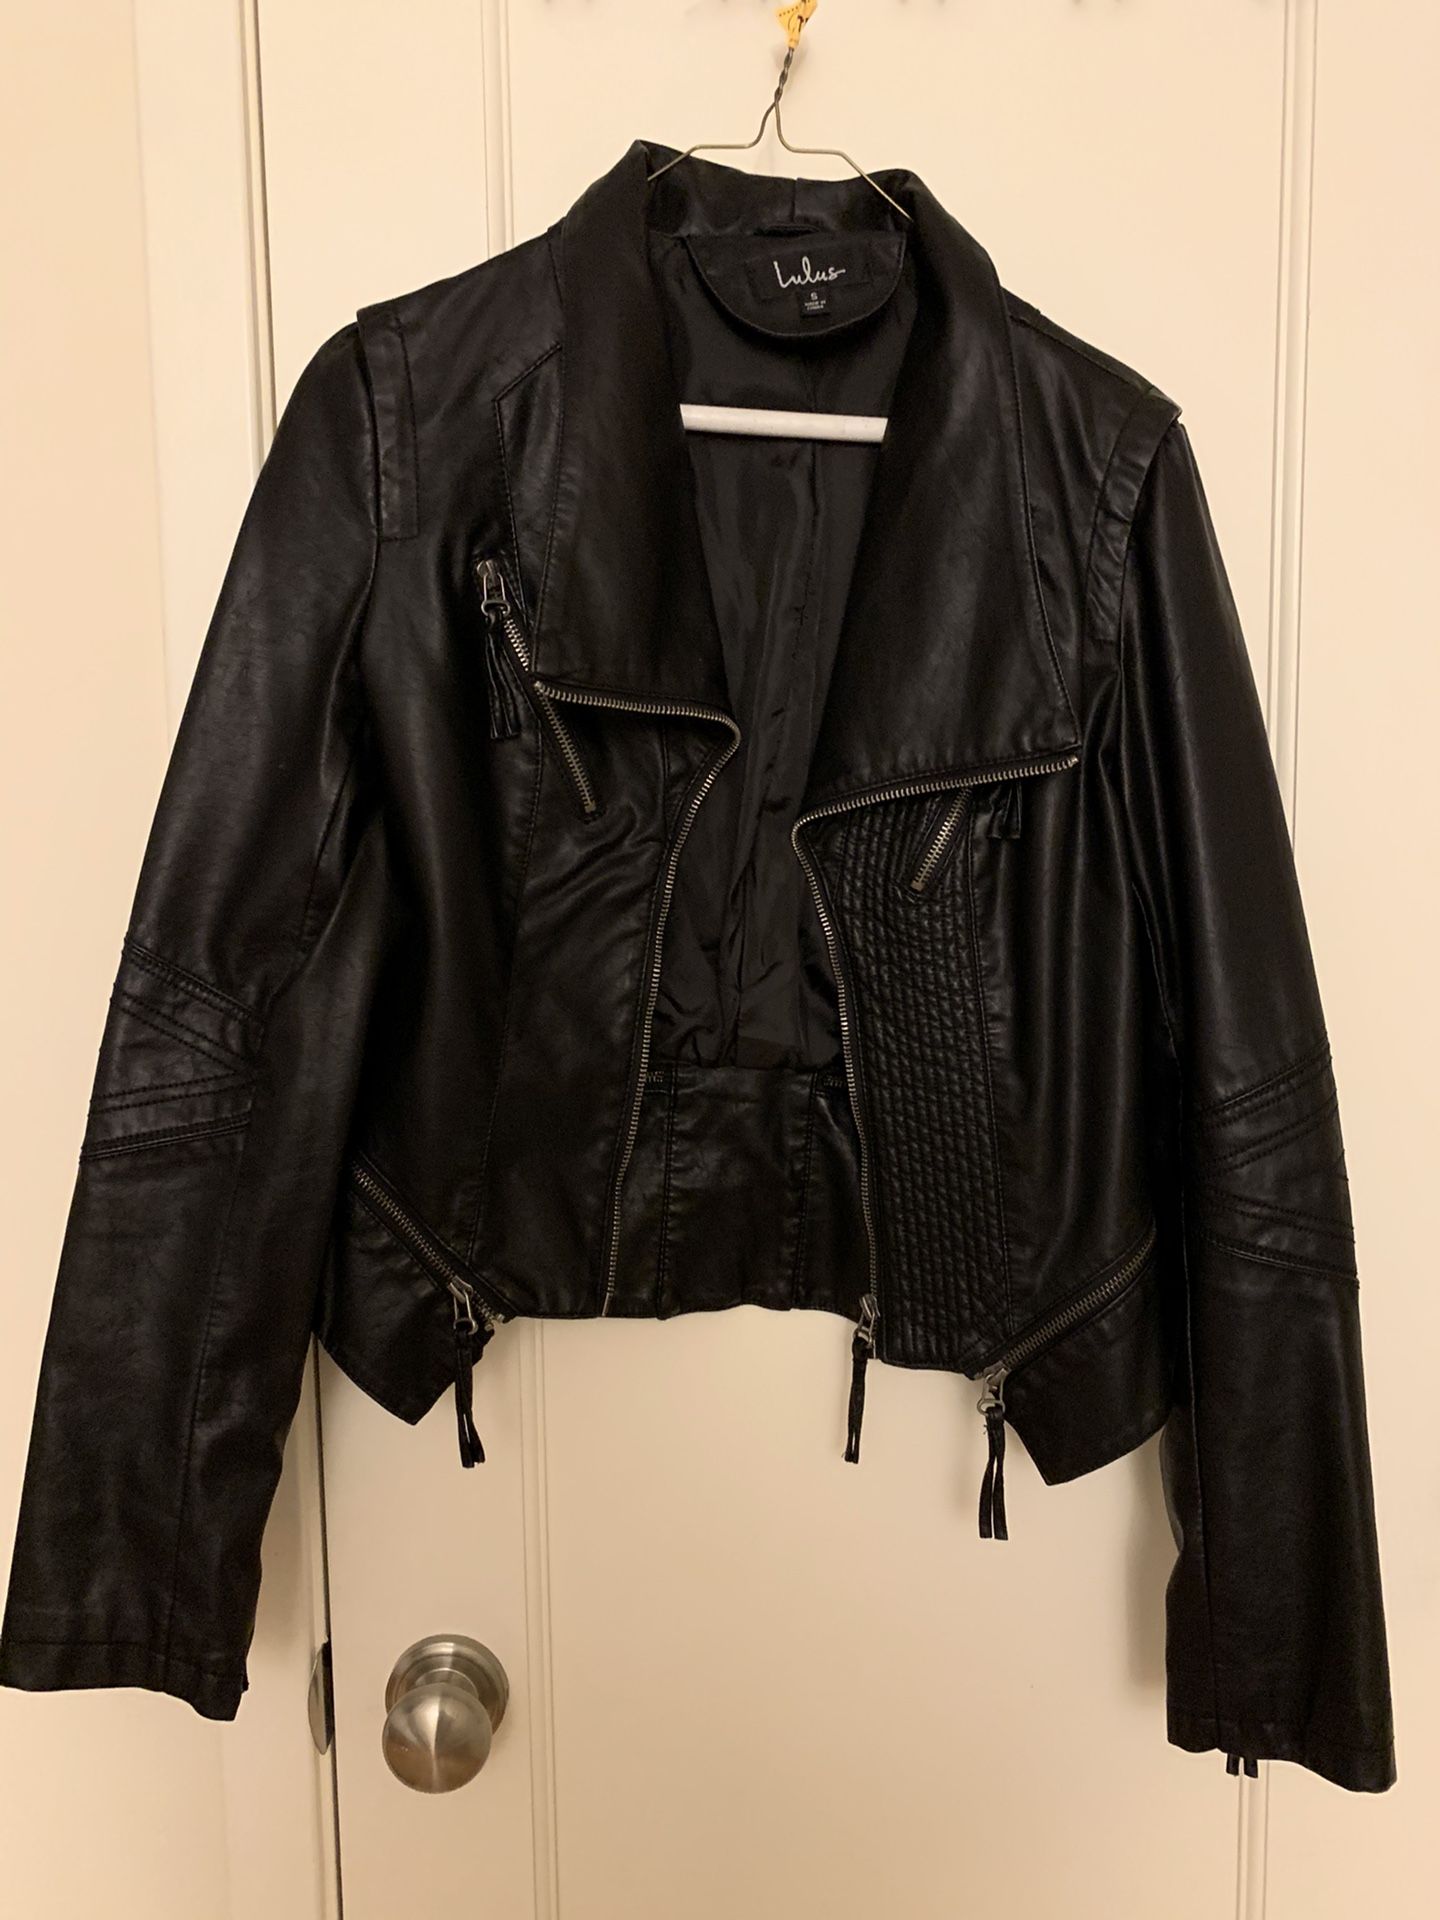 Women’s black vegan leather jacket size S by Lulu’s